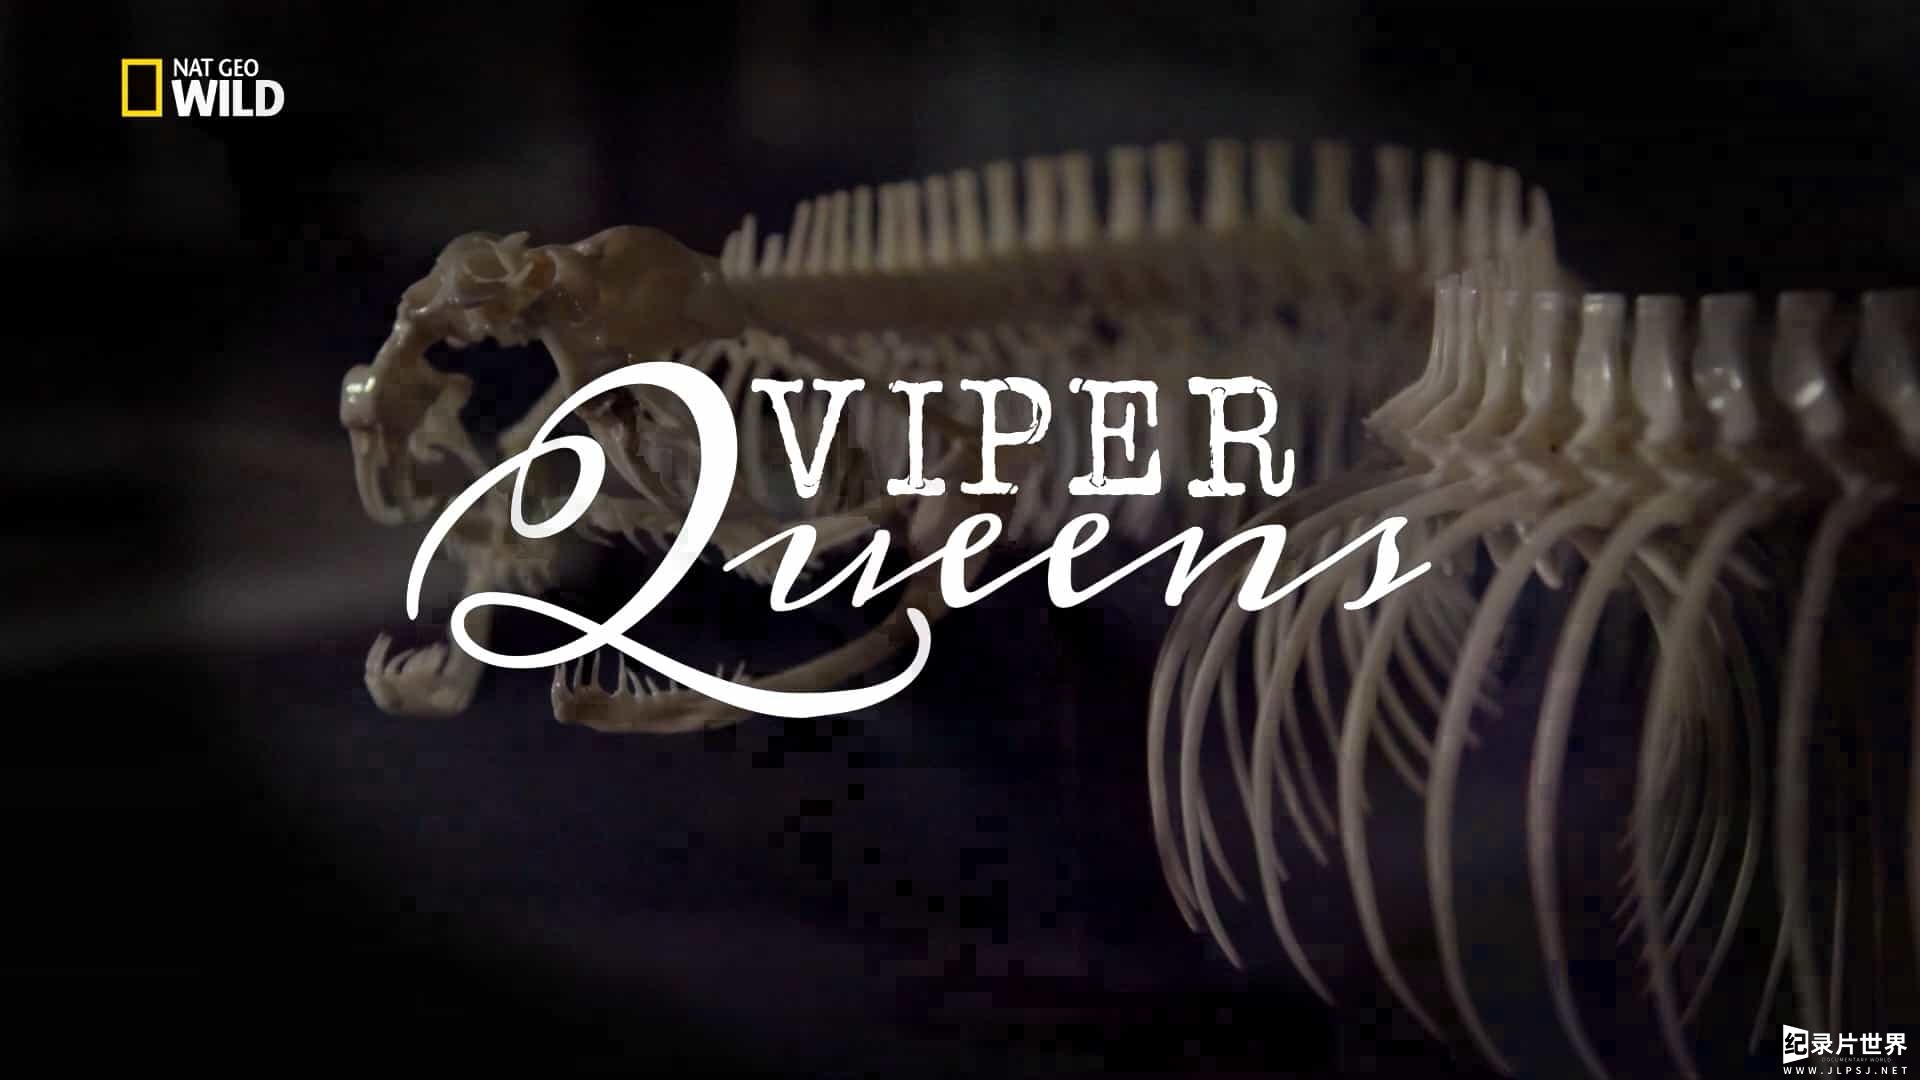 国家地理 《毒蛇女王 Viper Queens 2017》全1集